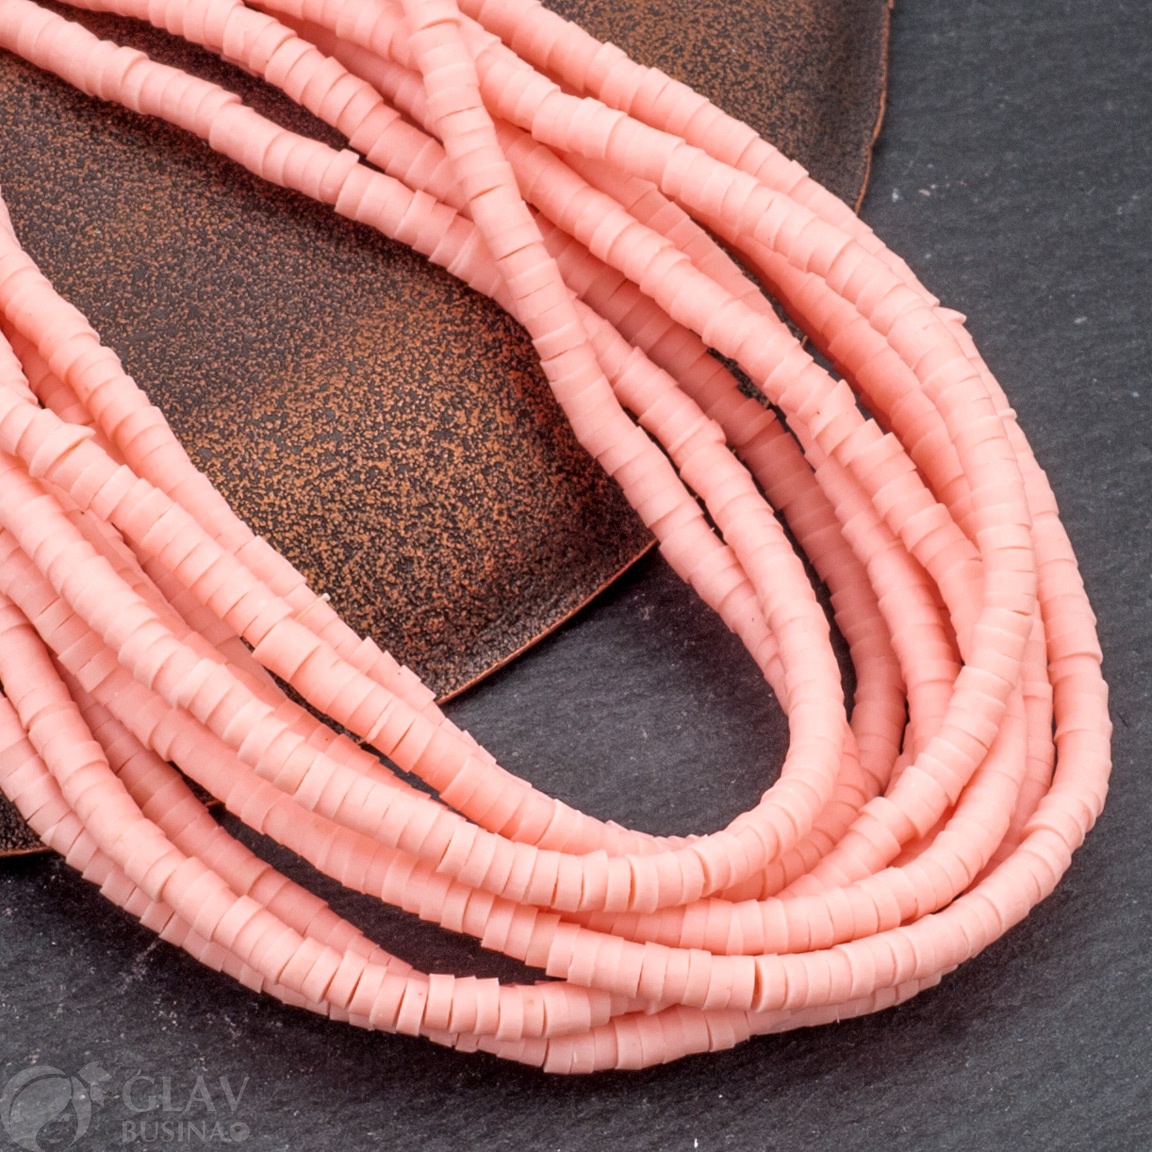 Нитка плоских бусин из полимерной глины, р-р 3х0,1-0,6мм, отв. 1мм, в нитке 225 бусин / ок 23 см, цвет персика в сумерках (светло-розовый персиковый).